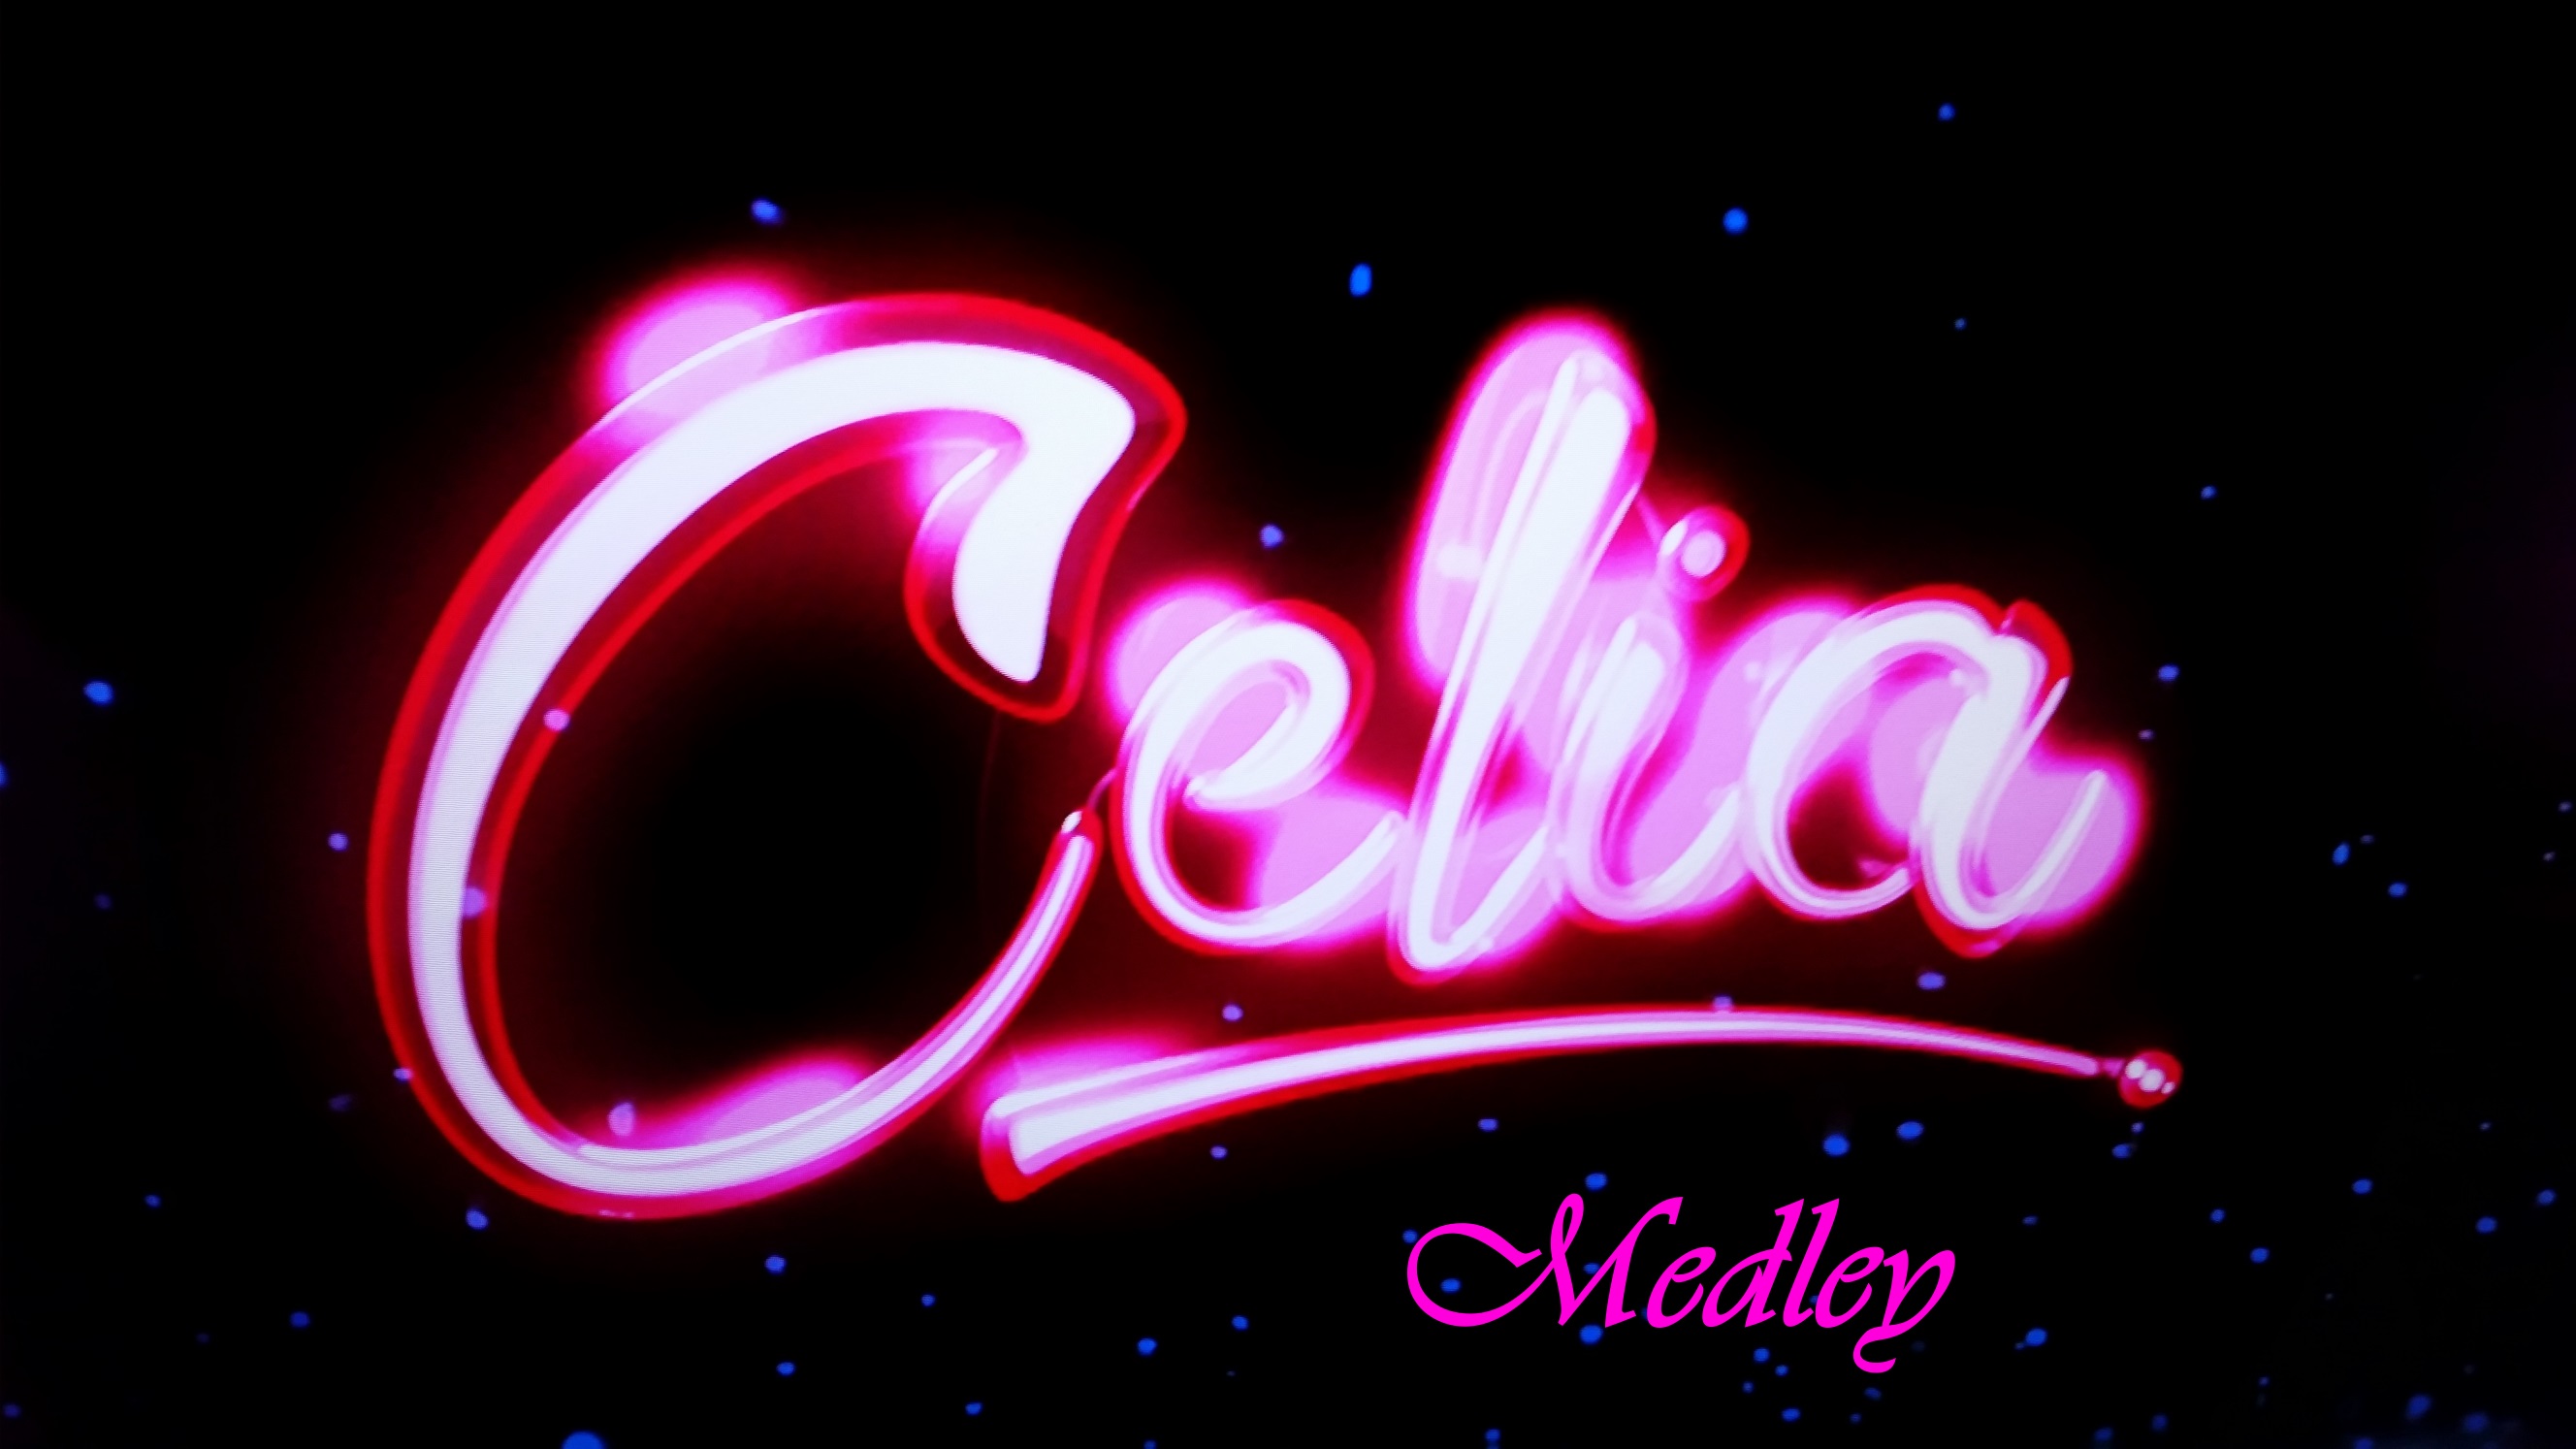 Celia Medley